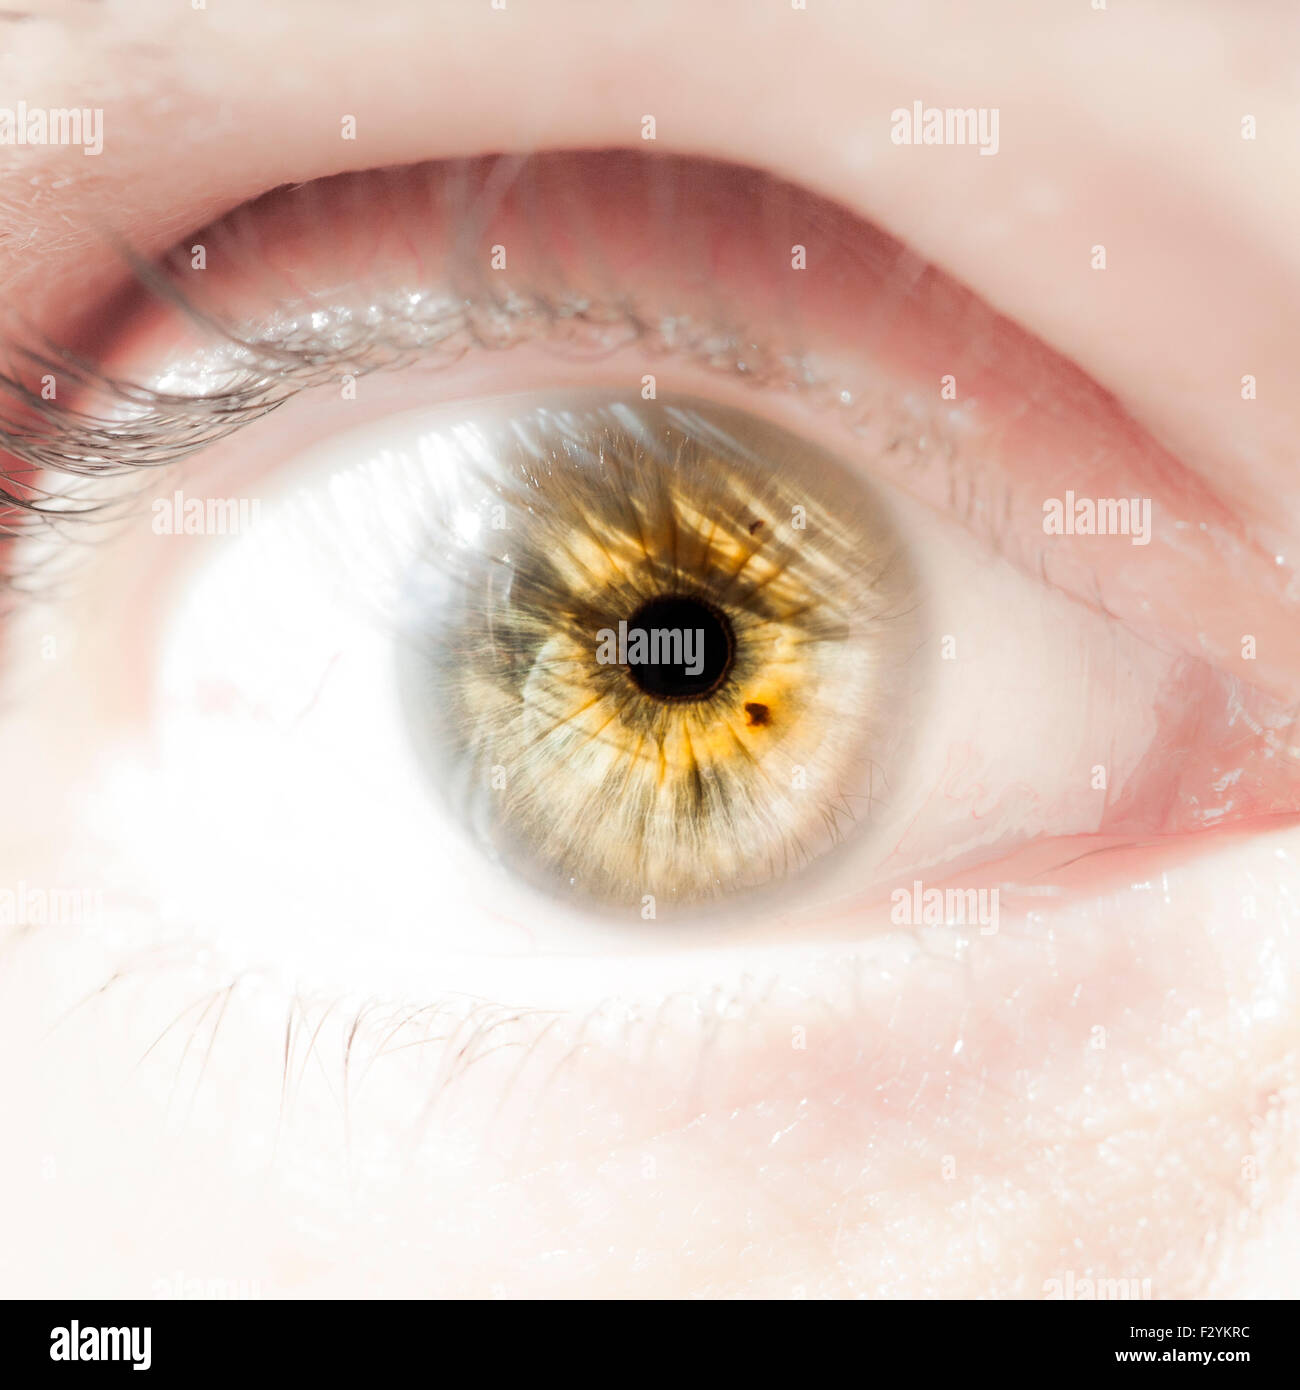 Human Eye Stock Photo